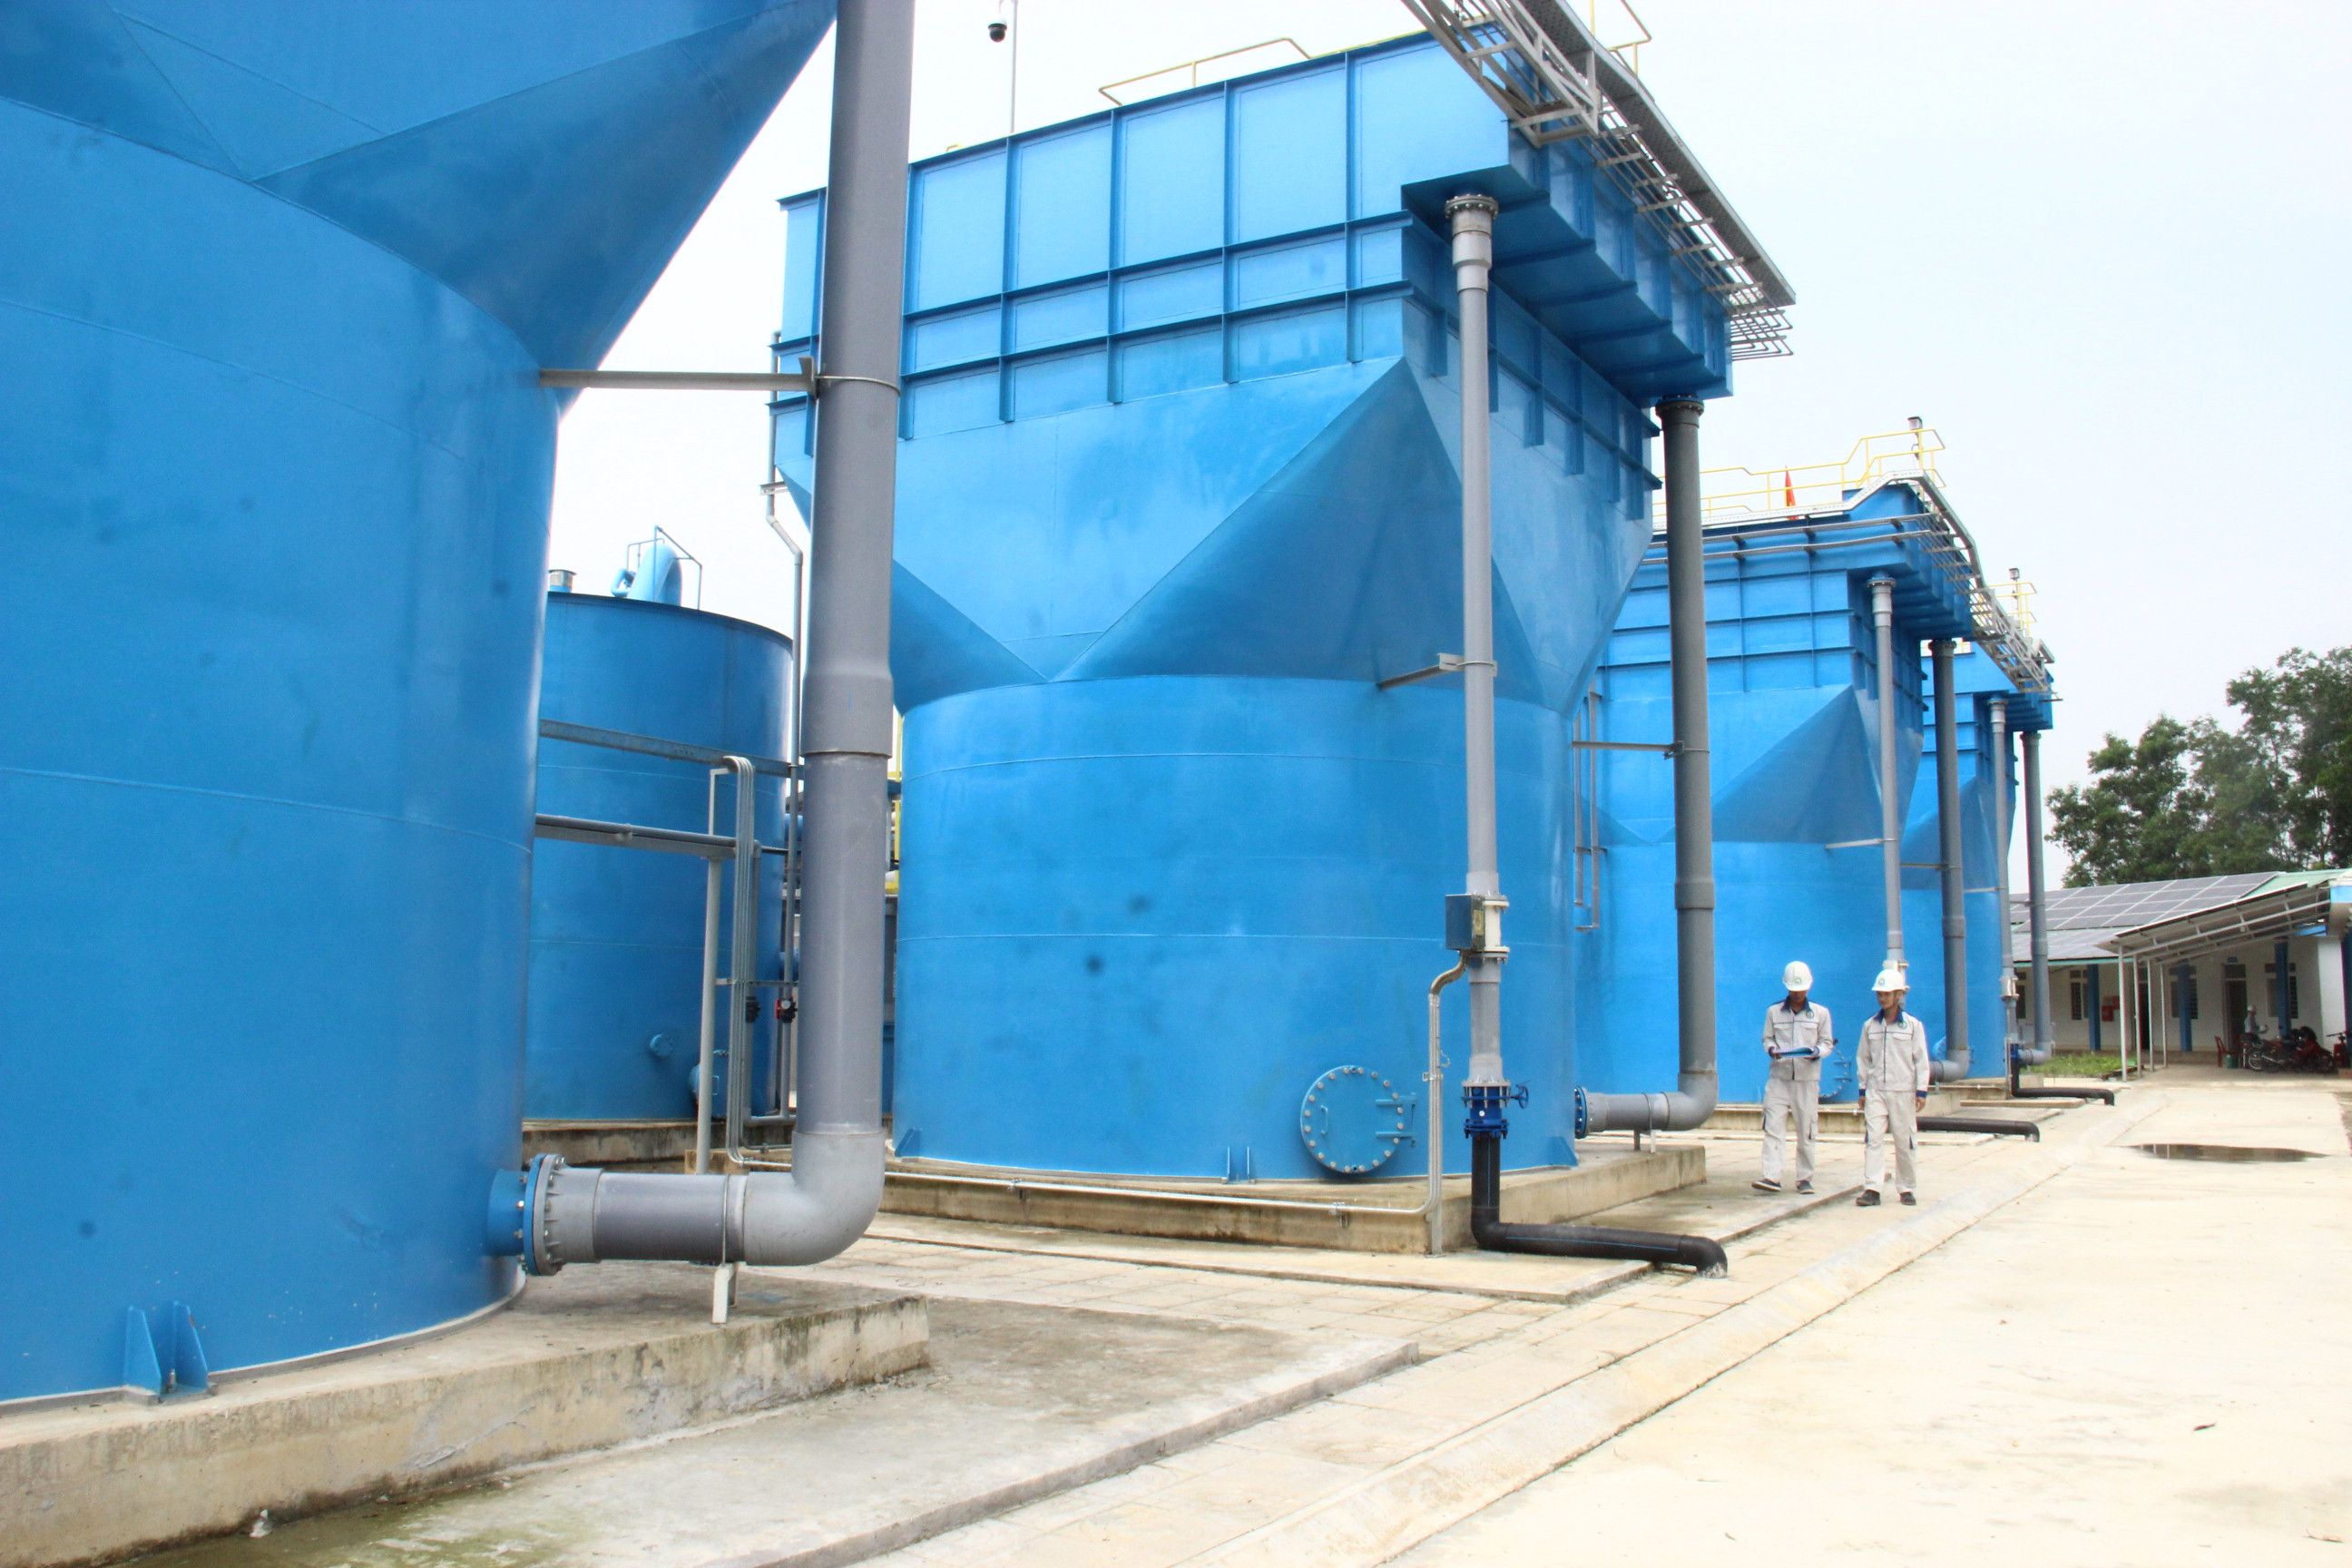 hờ sản xuất hiệu quả, Nhà máy nước sạch Hòa Sơn thực hiện đầy đủ nghĩa vụ ngân sách nhà nước. Ảnh Hoàng Vĩnh